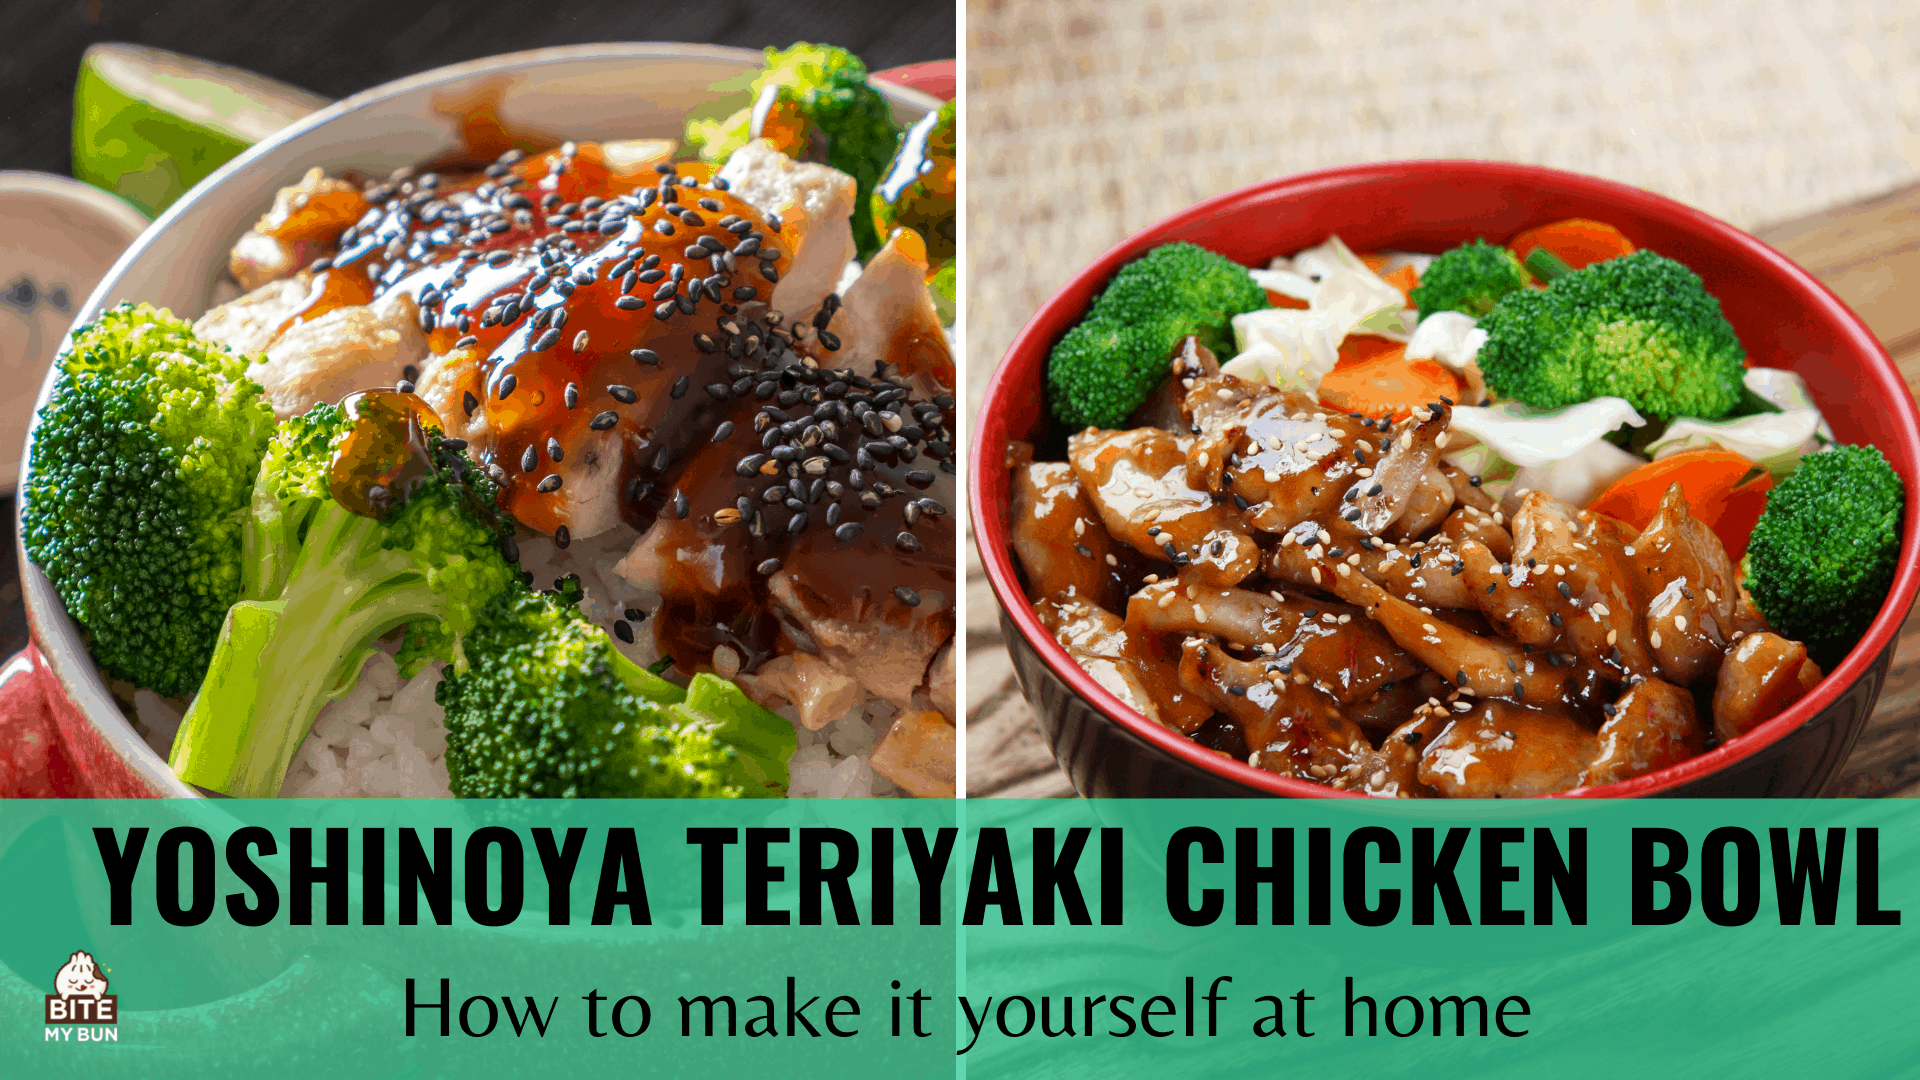 Cuenco de pollo teriyaki Yoshinoya | Cómo hacerlo tú mismo en casa